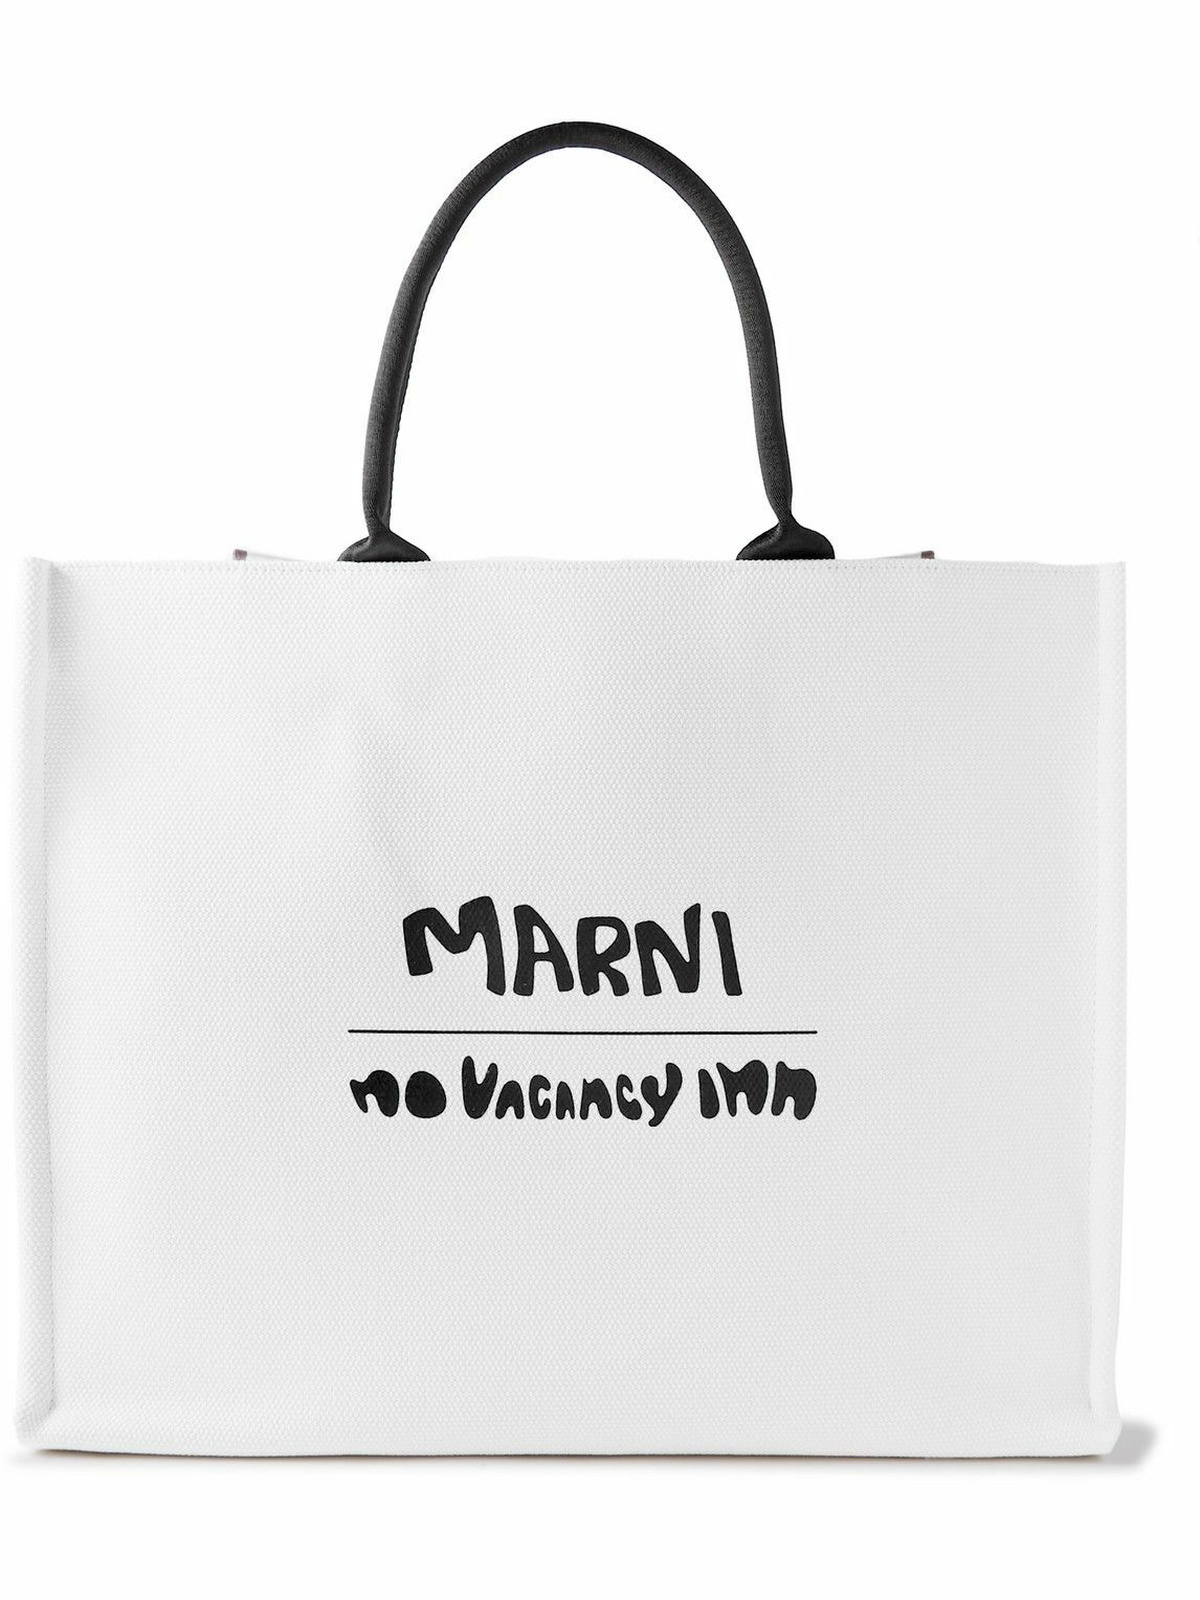 Marni - No Vacancy Inn Printed Canvas Tote Bag Marni